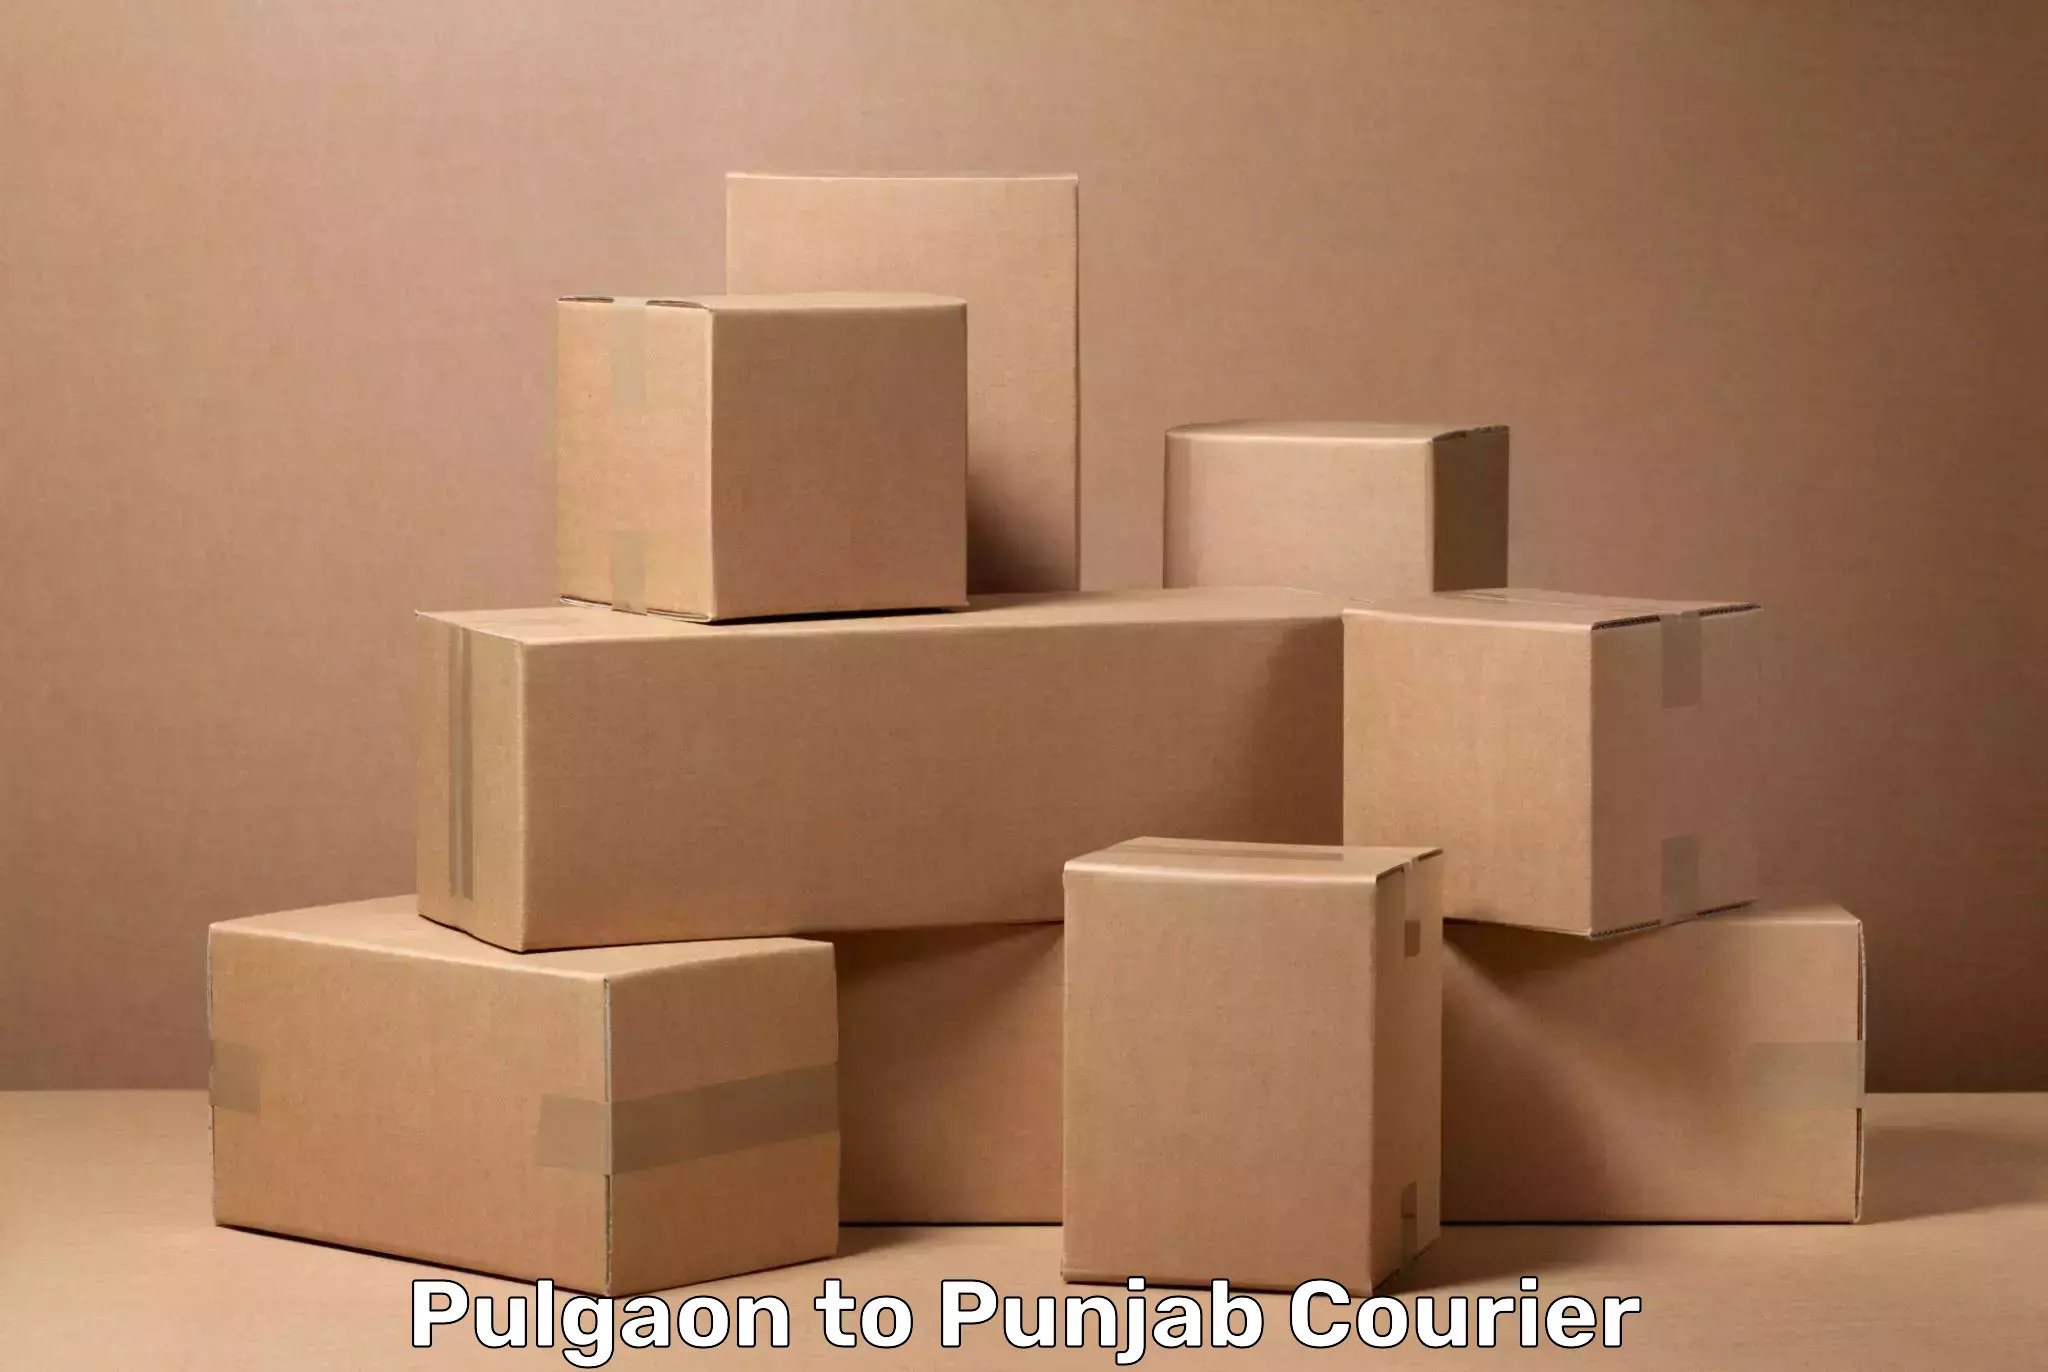 Luggage shipping service Pulgaon to Punjab